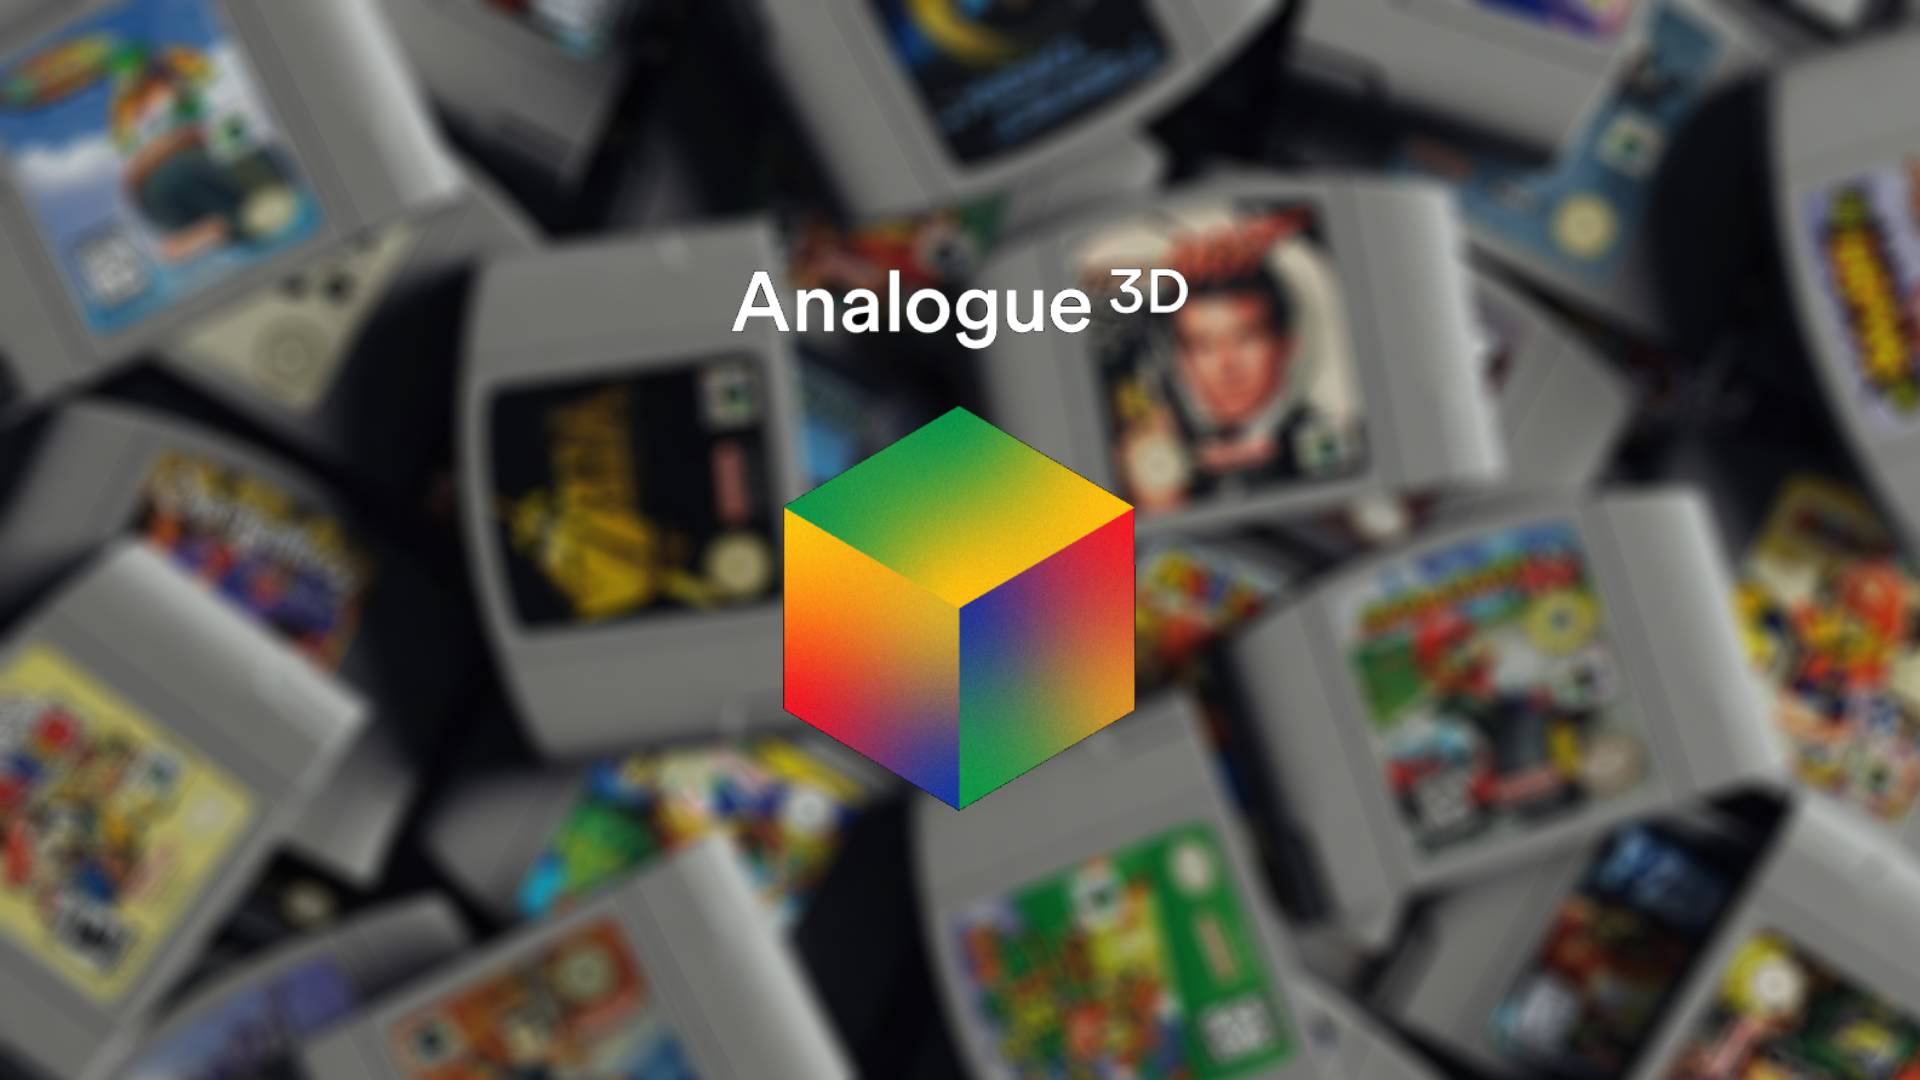 Logo 3D analogique avec cartouches N64 en fond